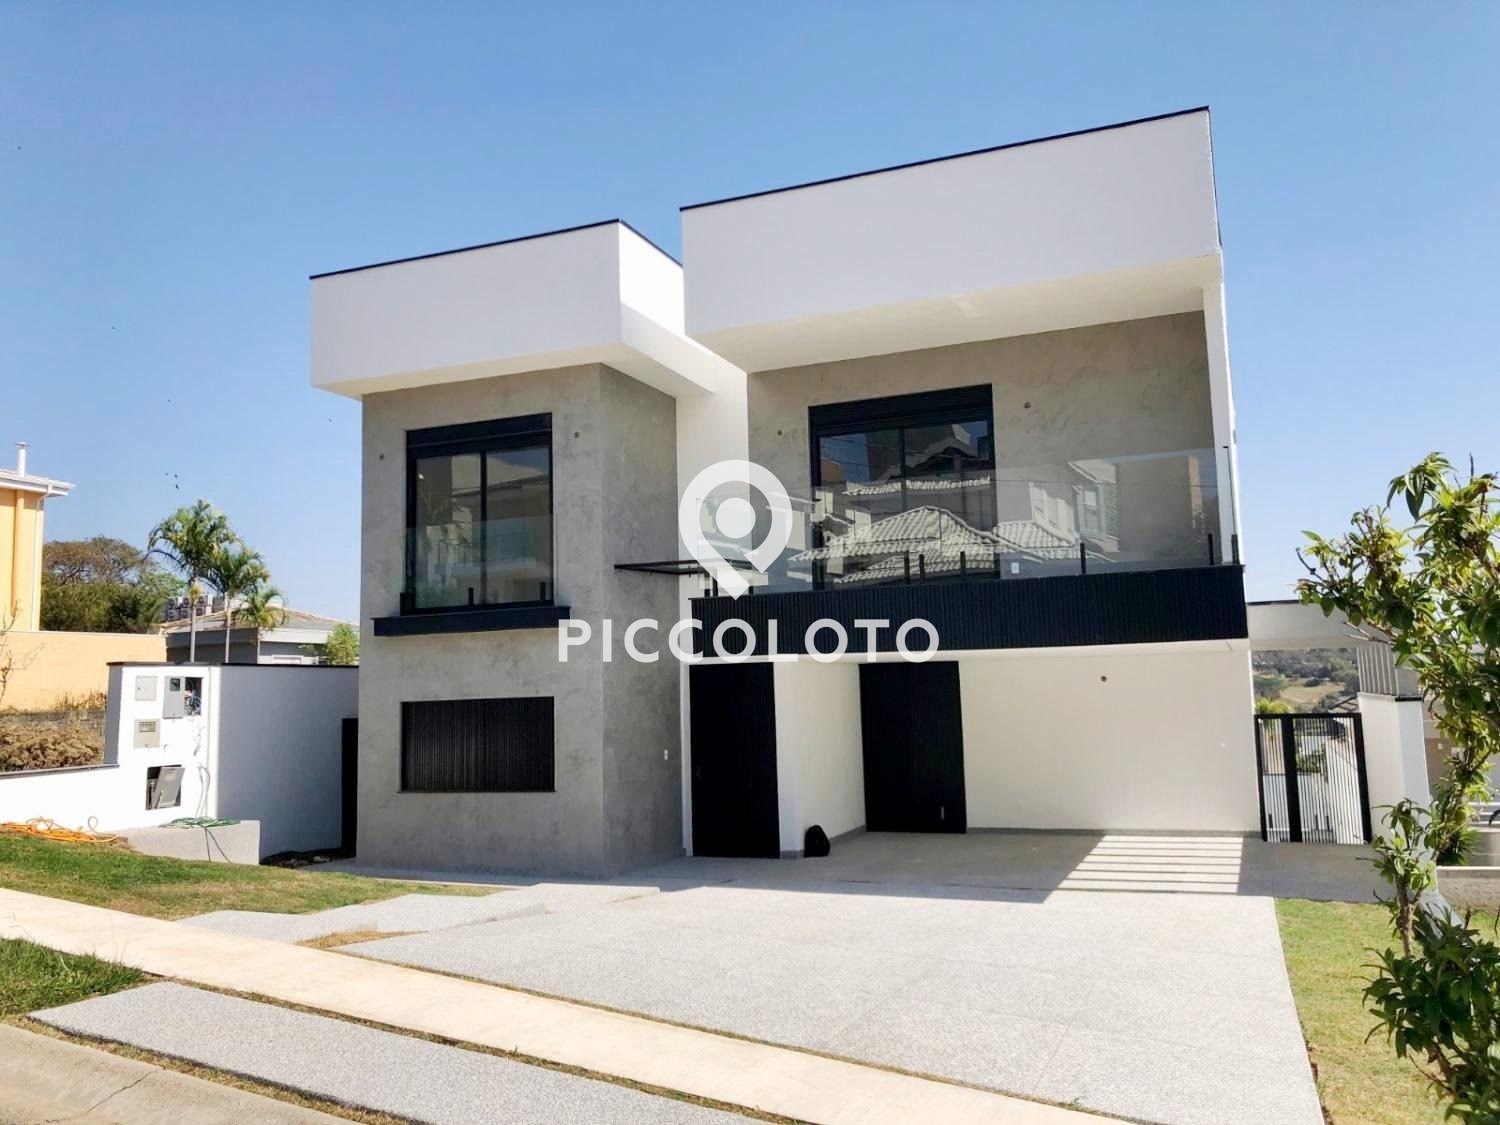 Piccoloto - Casa à venda no Jardim Myrian Moreira da Costa em Campinas